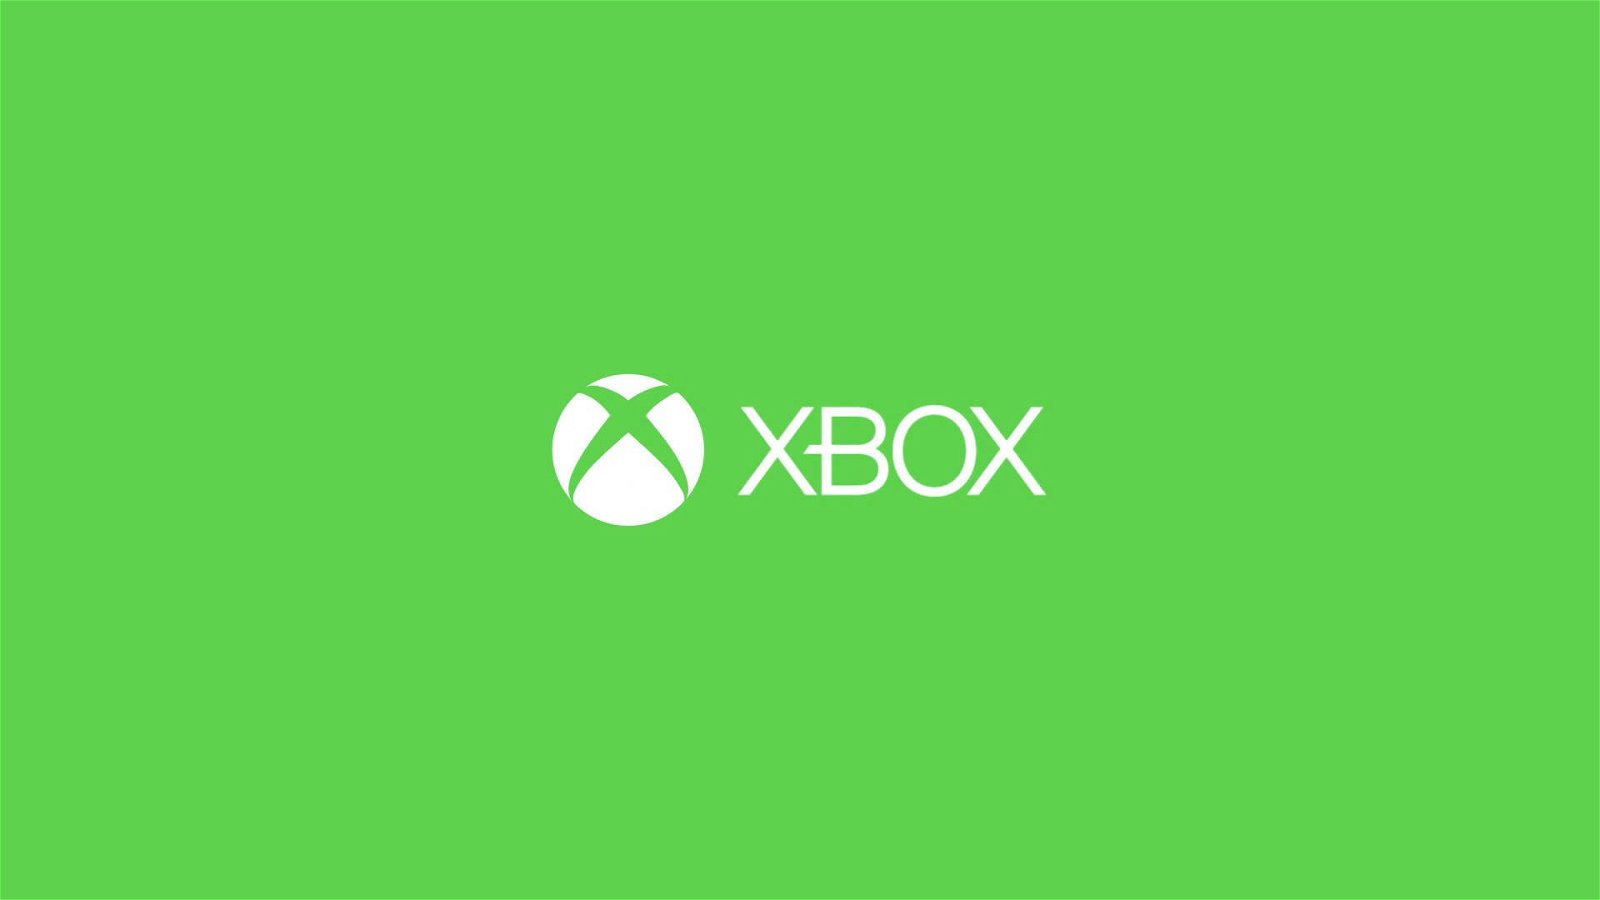 Immagine di Xbox ci mette una pezza: basta acquisti folli dei bambini